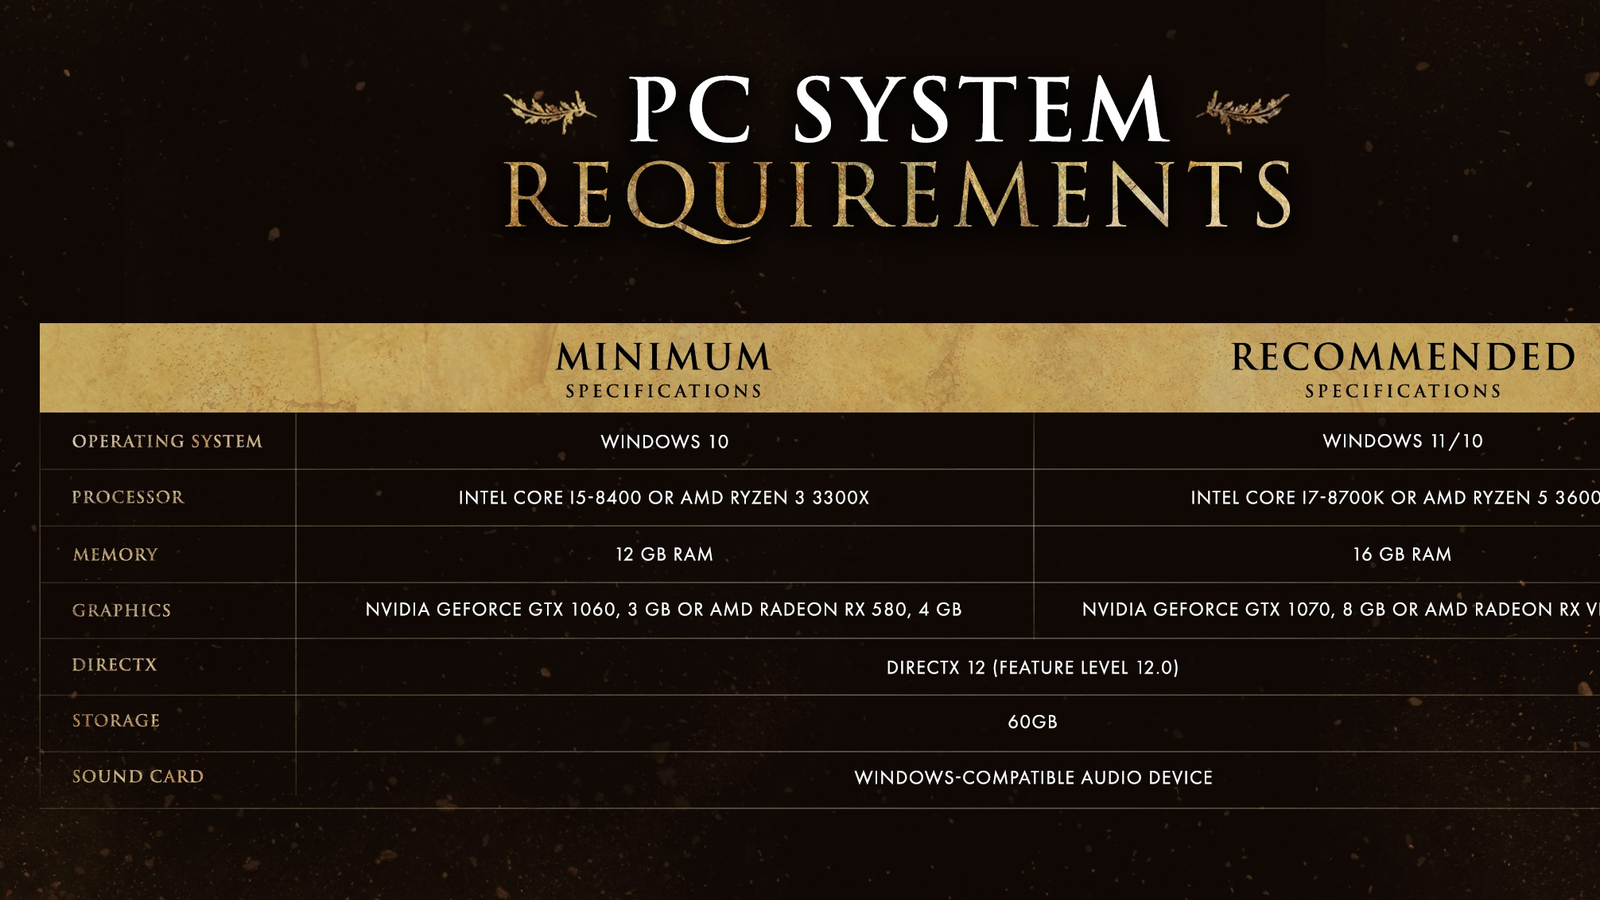 Requisitos de Elden Ring no PC são confirmados pela Bandai